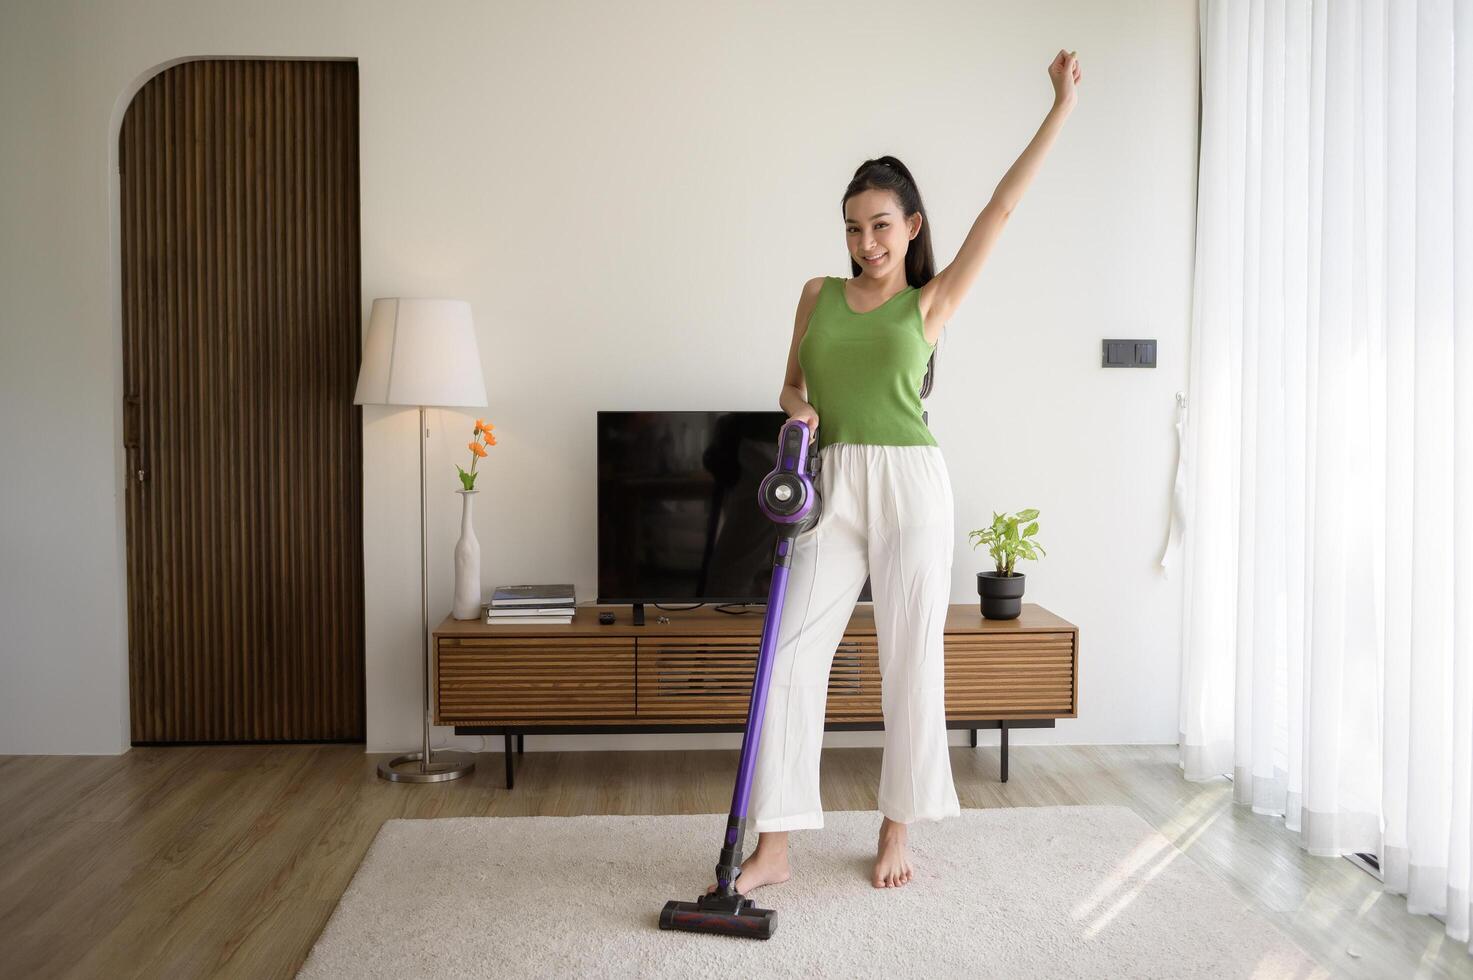 Jeune content femme en utilisant une vide nettoyeur le sol dans vivant pièce photo